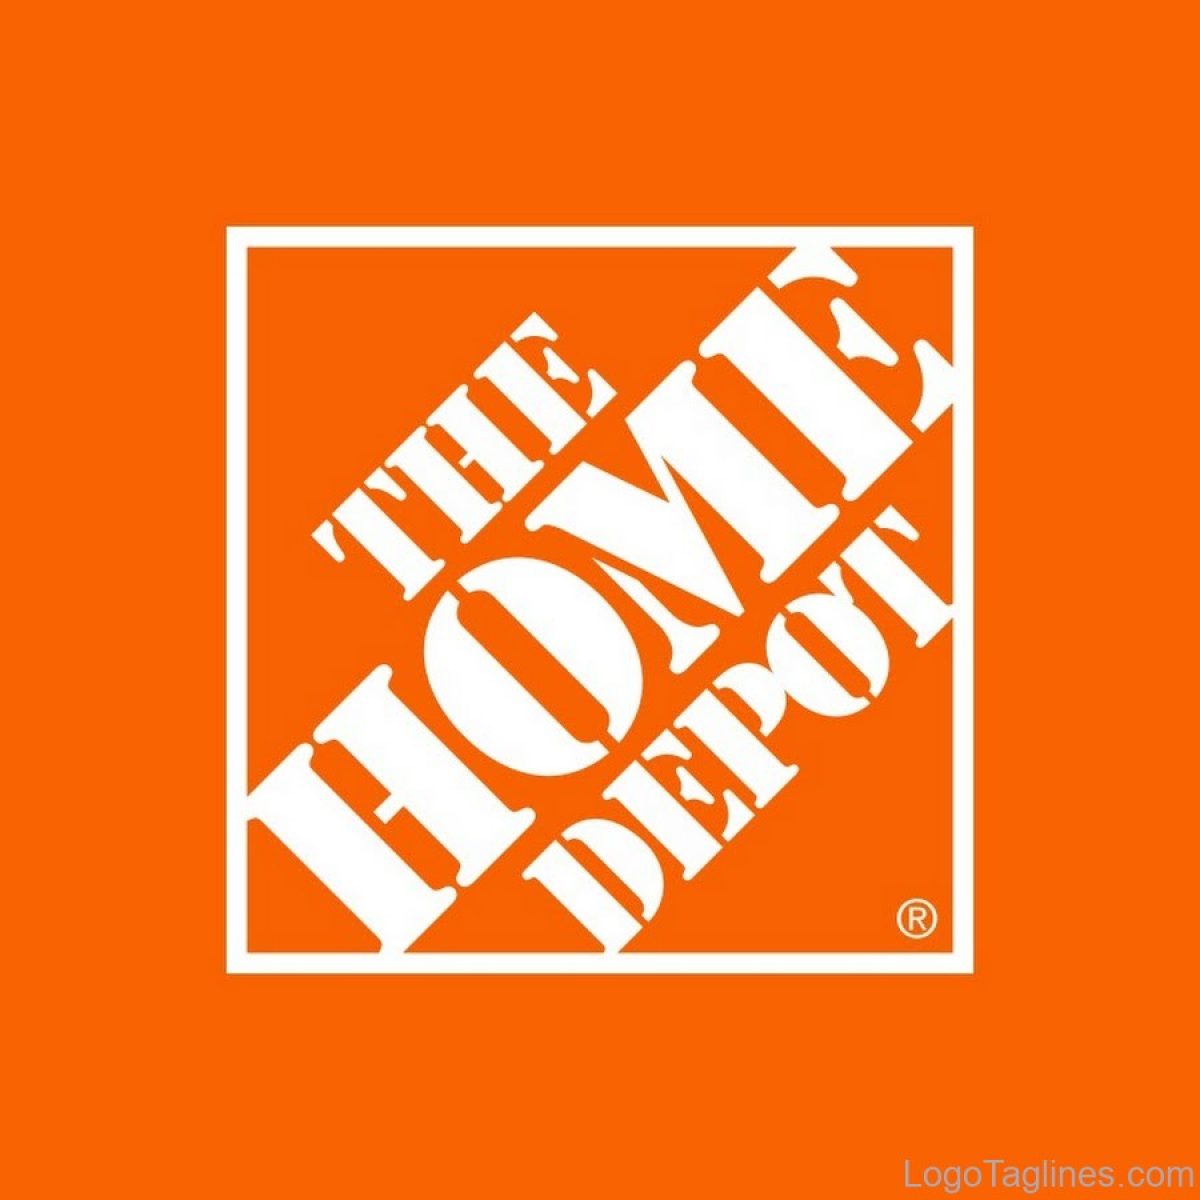 home depot logo - The Depot R Tiome Logo Taglines.com